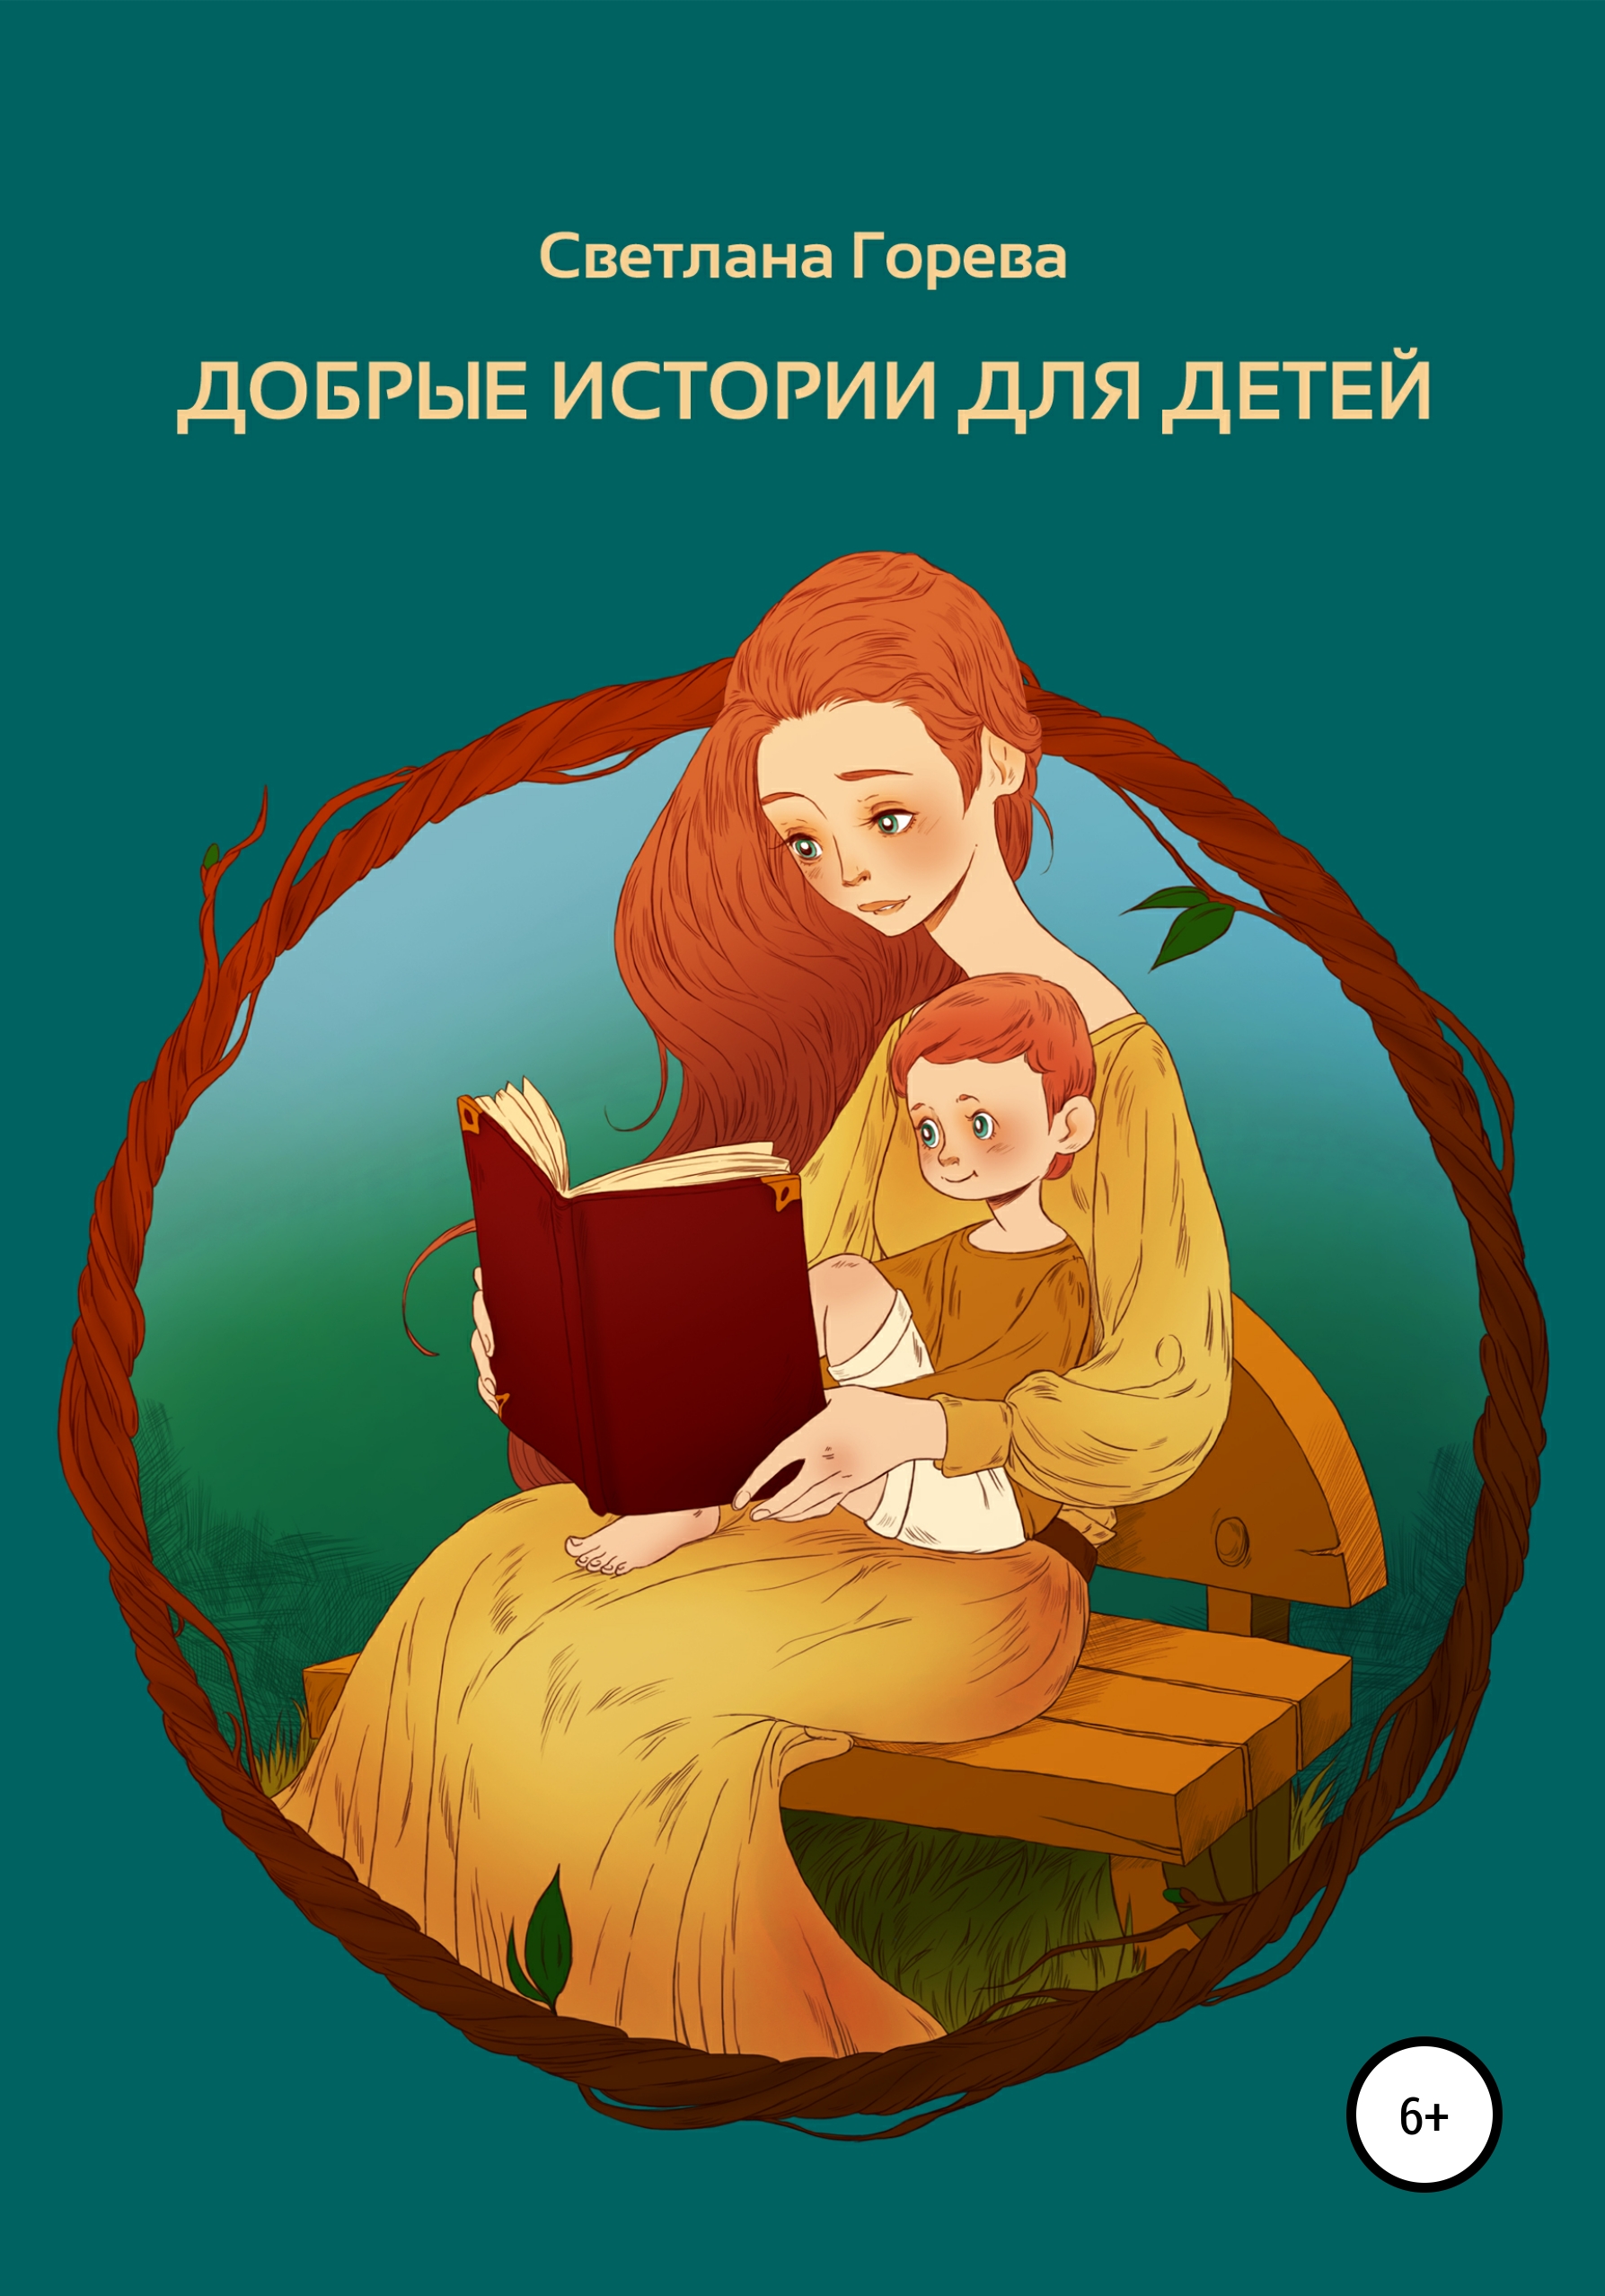 Учат добру рассказы. Добрые истории для детей. Добрые рассказы для детей. Добрые книги для детей. История для детей.